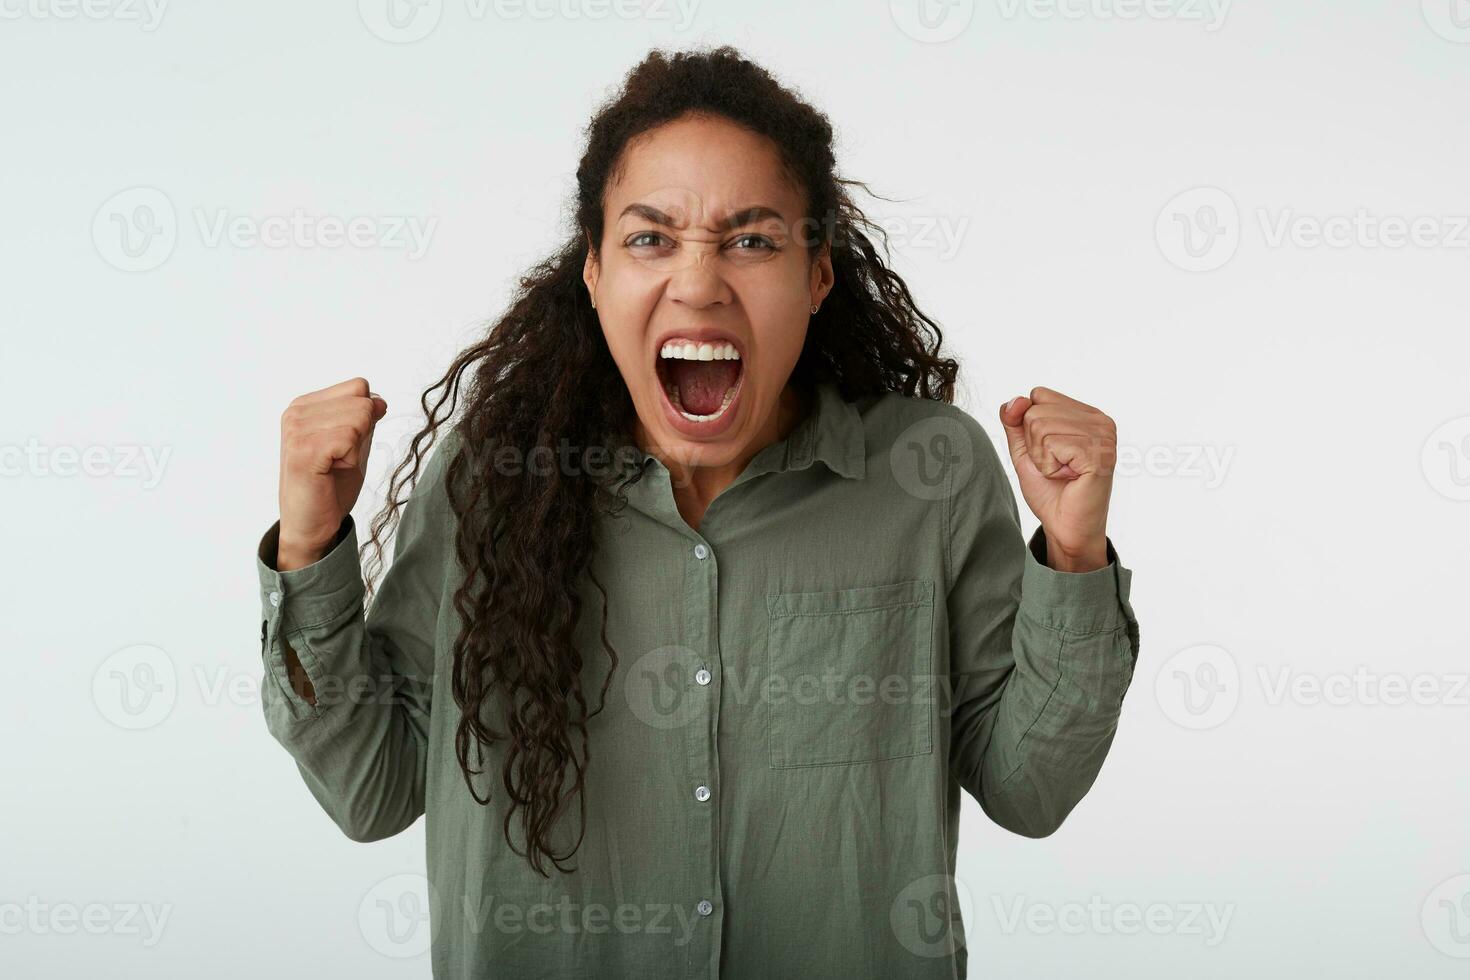 estudio foto de enojado largo peludo Rizado oscuro desollado hembra levantamiento emocionado puños mientras gritando furiosamente, vestido en verde camisa mientras posando terminado blanco antecedentes